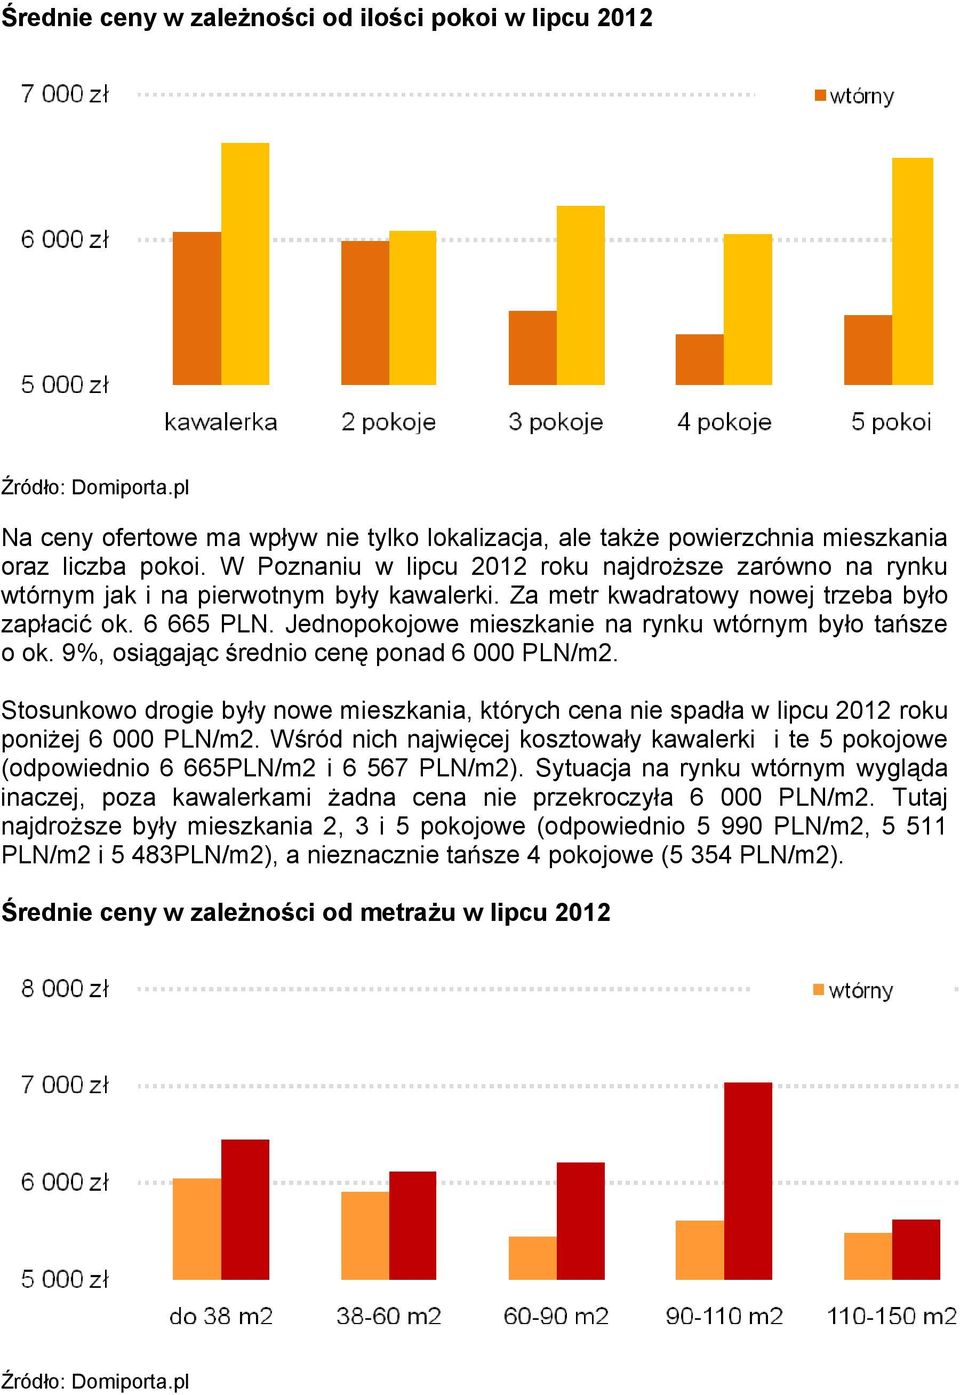 Jednopokojowe mieszkanie na rynku wtórnym było tańsze o ok. 9%, osiągając średnio cenę ponad 6 000 PLN/m2.